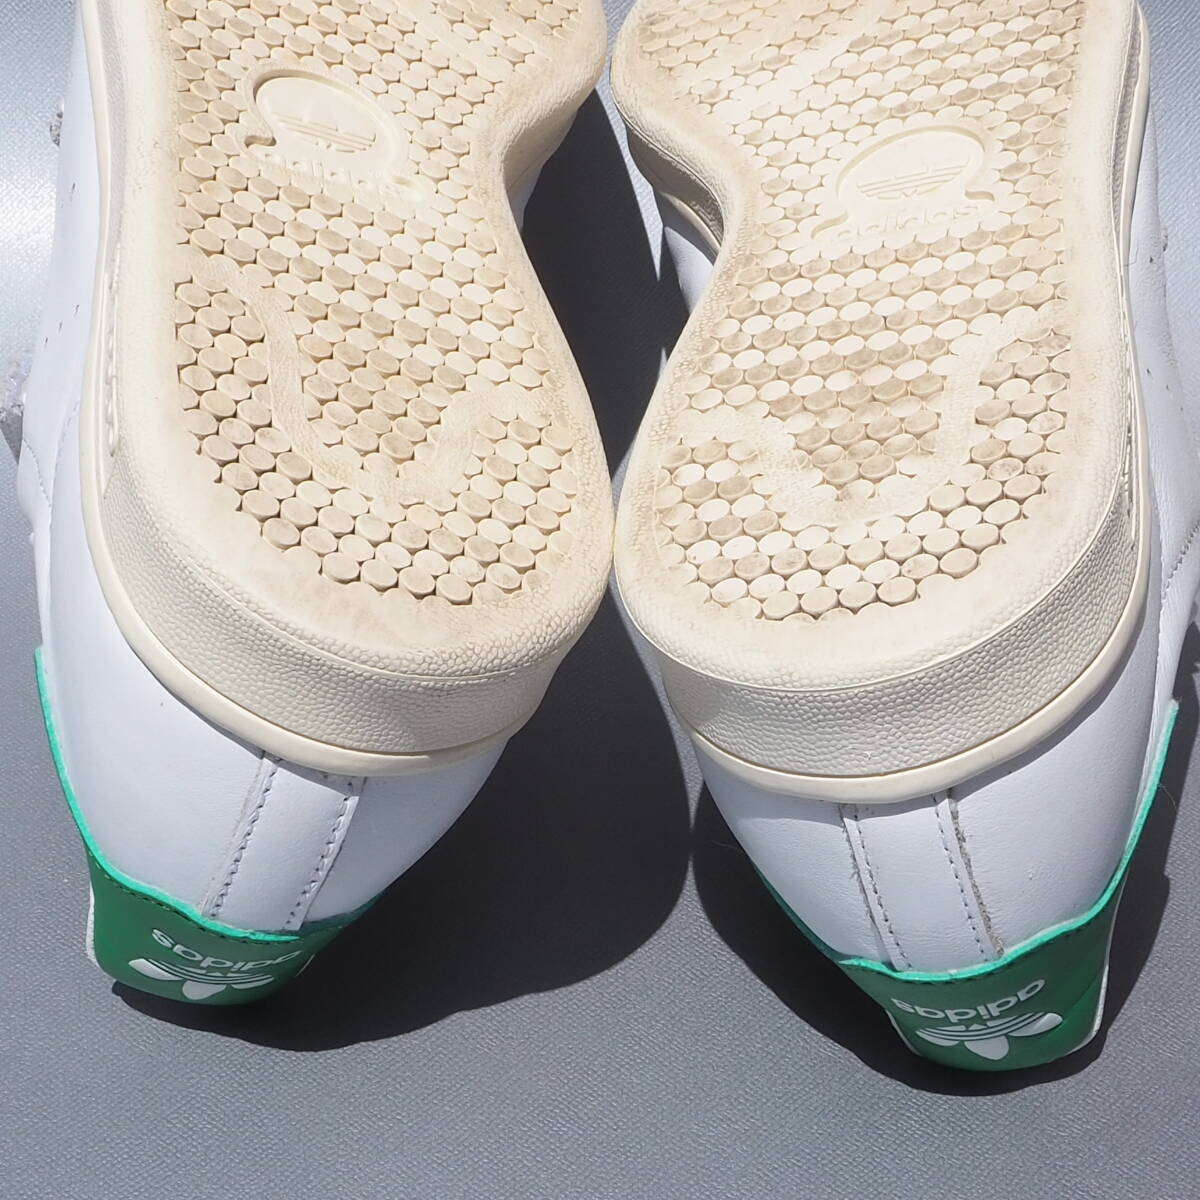  красивая вещь !! 2016 год выпуска  US8 / 26cm adidas originals FAST  белый ｘ зеленый   кожа  ...  липучка   Натуральная кожа 